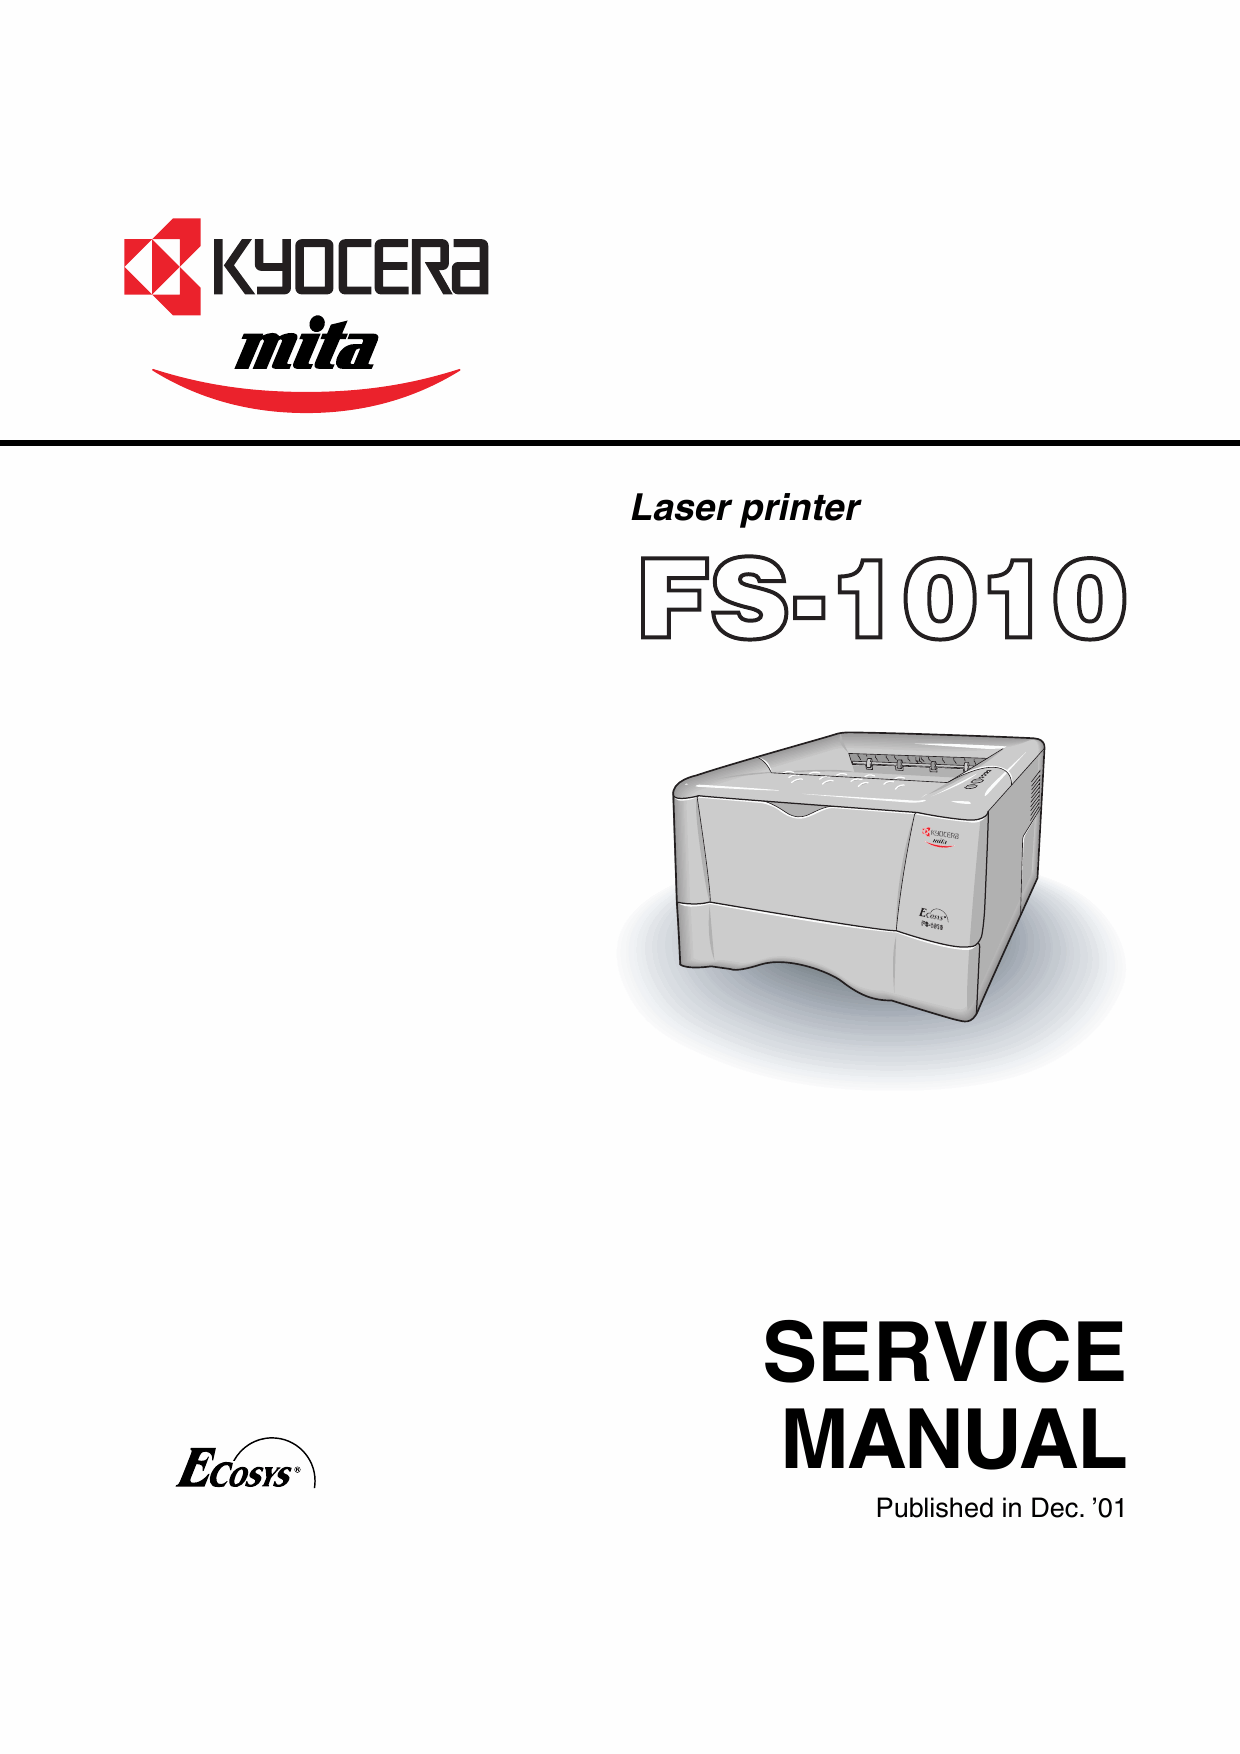 KYOCERA LaserPrinter FS-1010 Parts and Service Manual-1